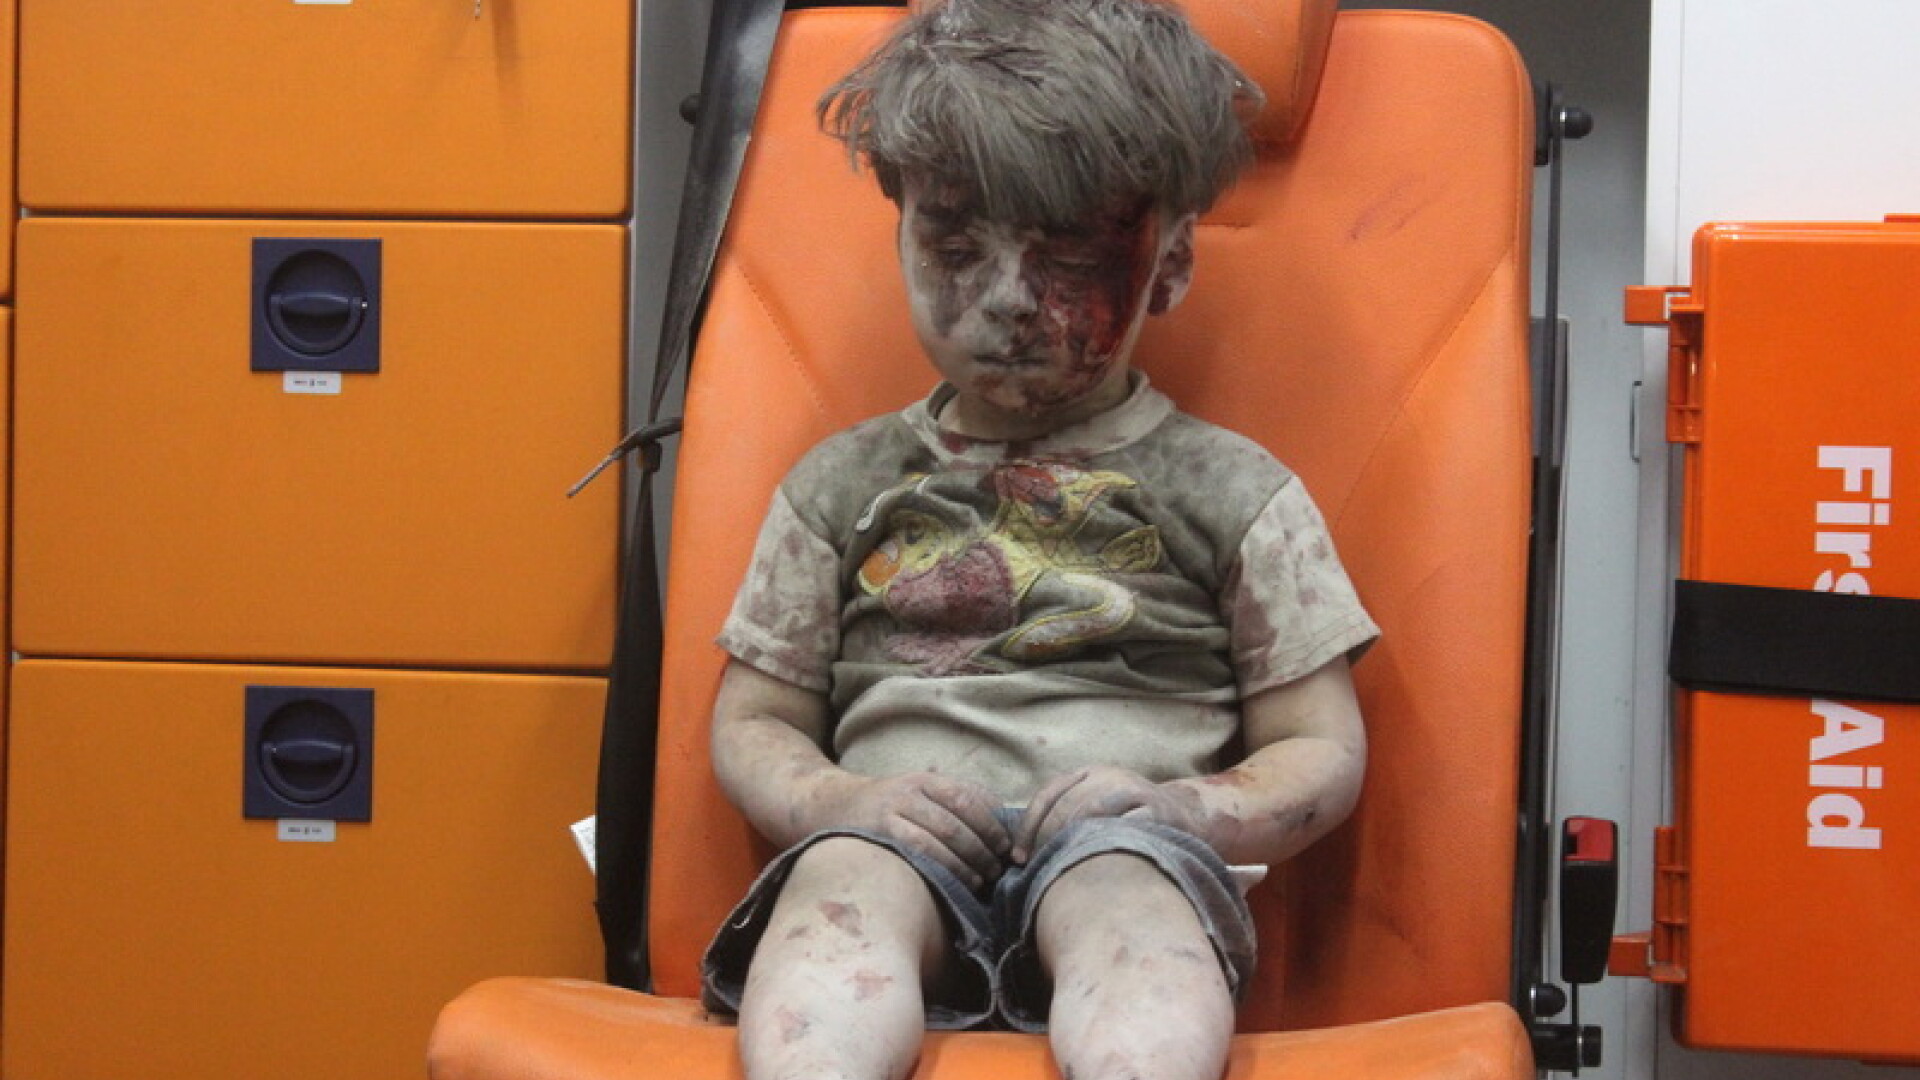 Imaginea care surprinde catastrofa umanitara din Siria. Momentul in care un baietel este scos de sub o cladire bombardata